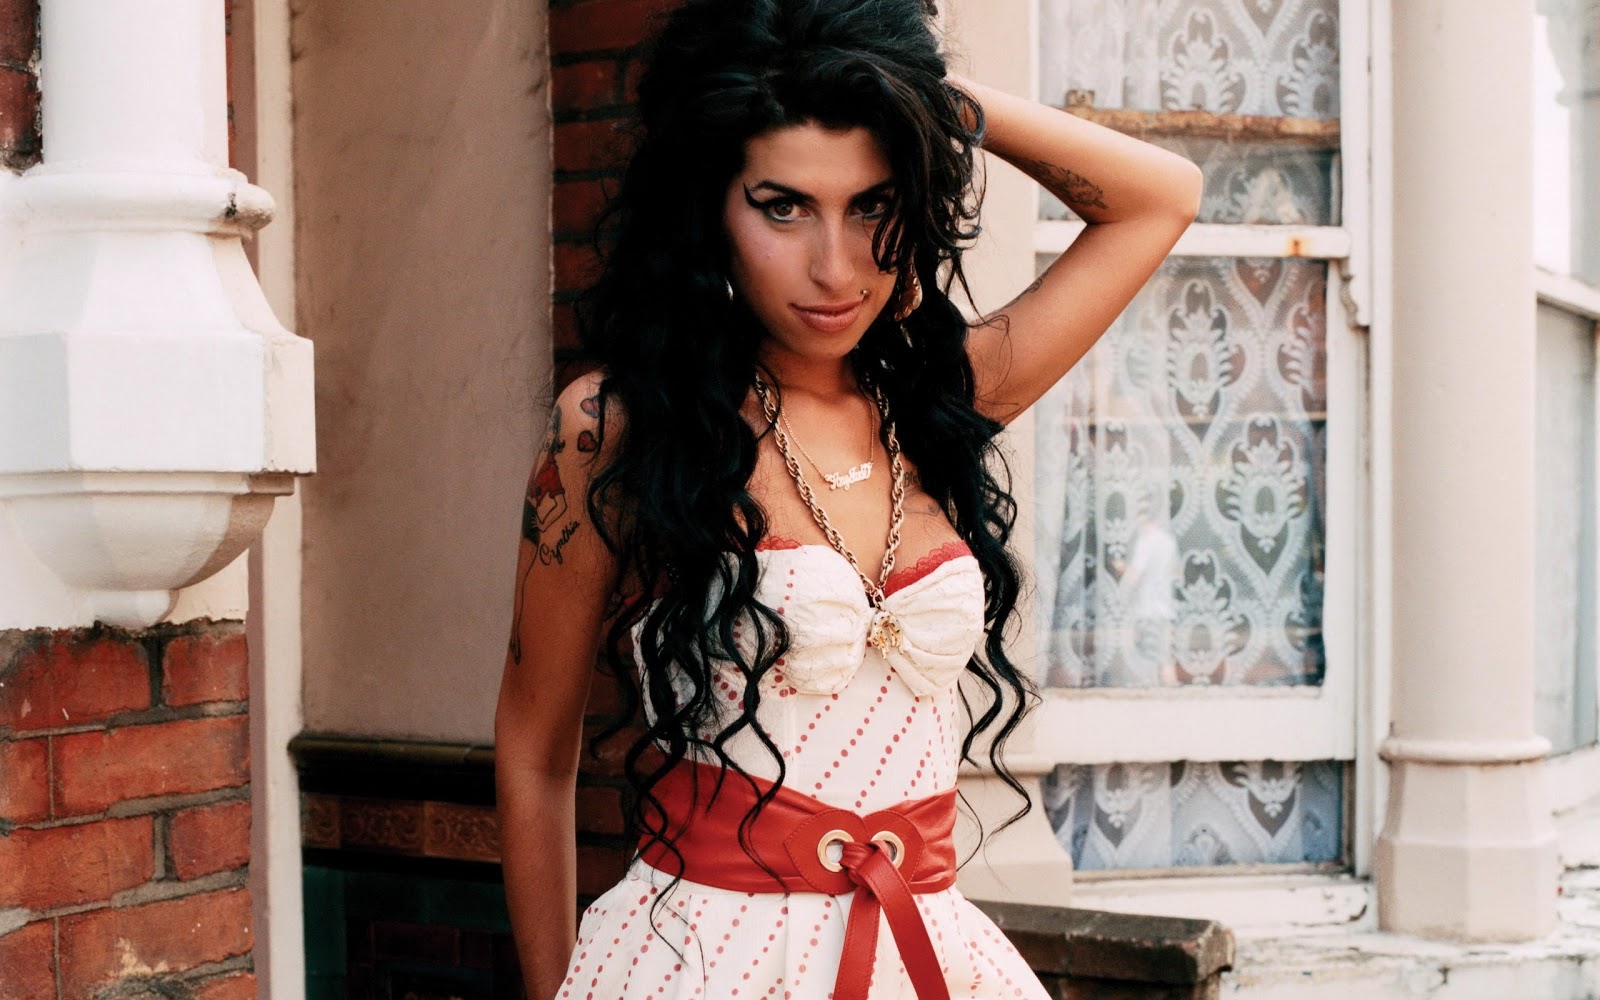 https://blogger.googleusercontent.com/img/b/R29vZ2xl/AVvXsEhZZQ-92yamy6ZyA7rCM2ii2w9FD1AYqQ9YQluVAMd0HRPjFd9c95MUp5OXz6eqZSP9BA3a5DWSCVkmRtP6qeBapqSqqewbUq1YTBZ2Qv5Fi4QTpsJBZCEWtwnJFz8andkgU3GhOHAOxlhT/s1600/Amy-Winehouse-020.jpg